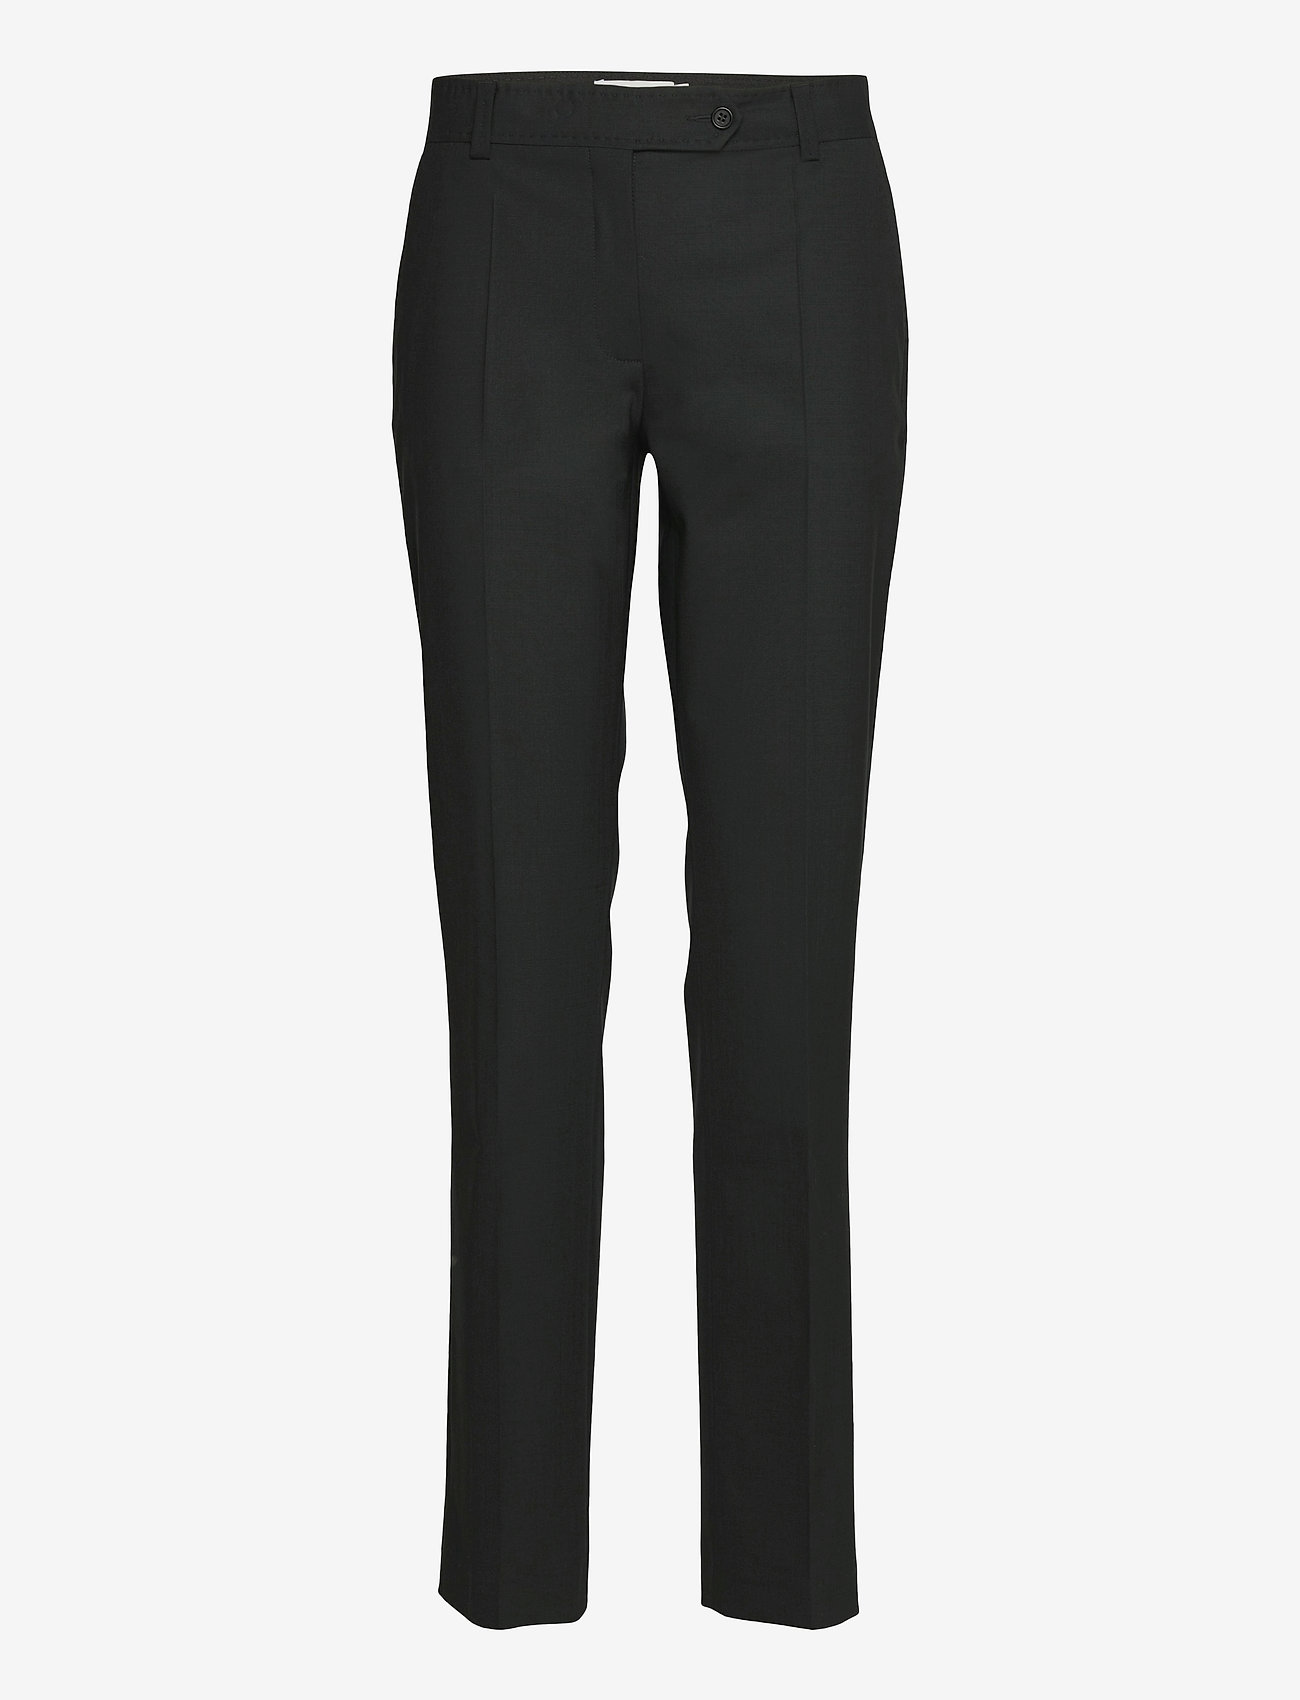 Andiata - Sanna 2 Trousers - pidulikud püksid - black - 1